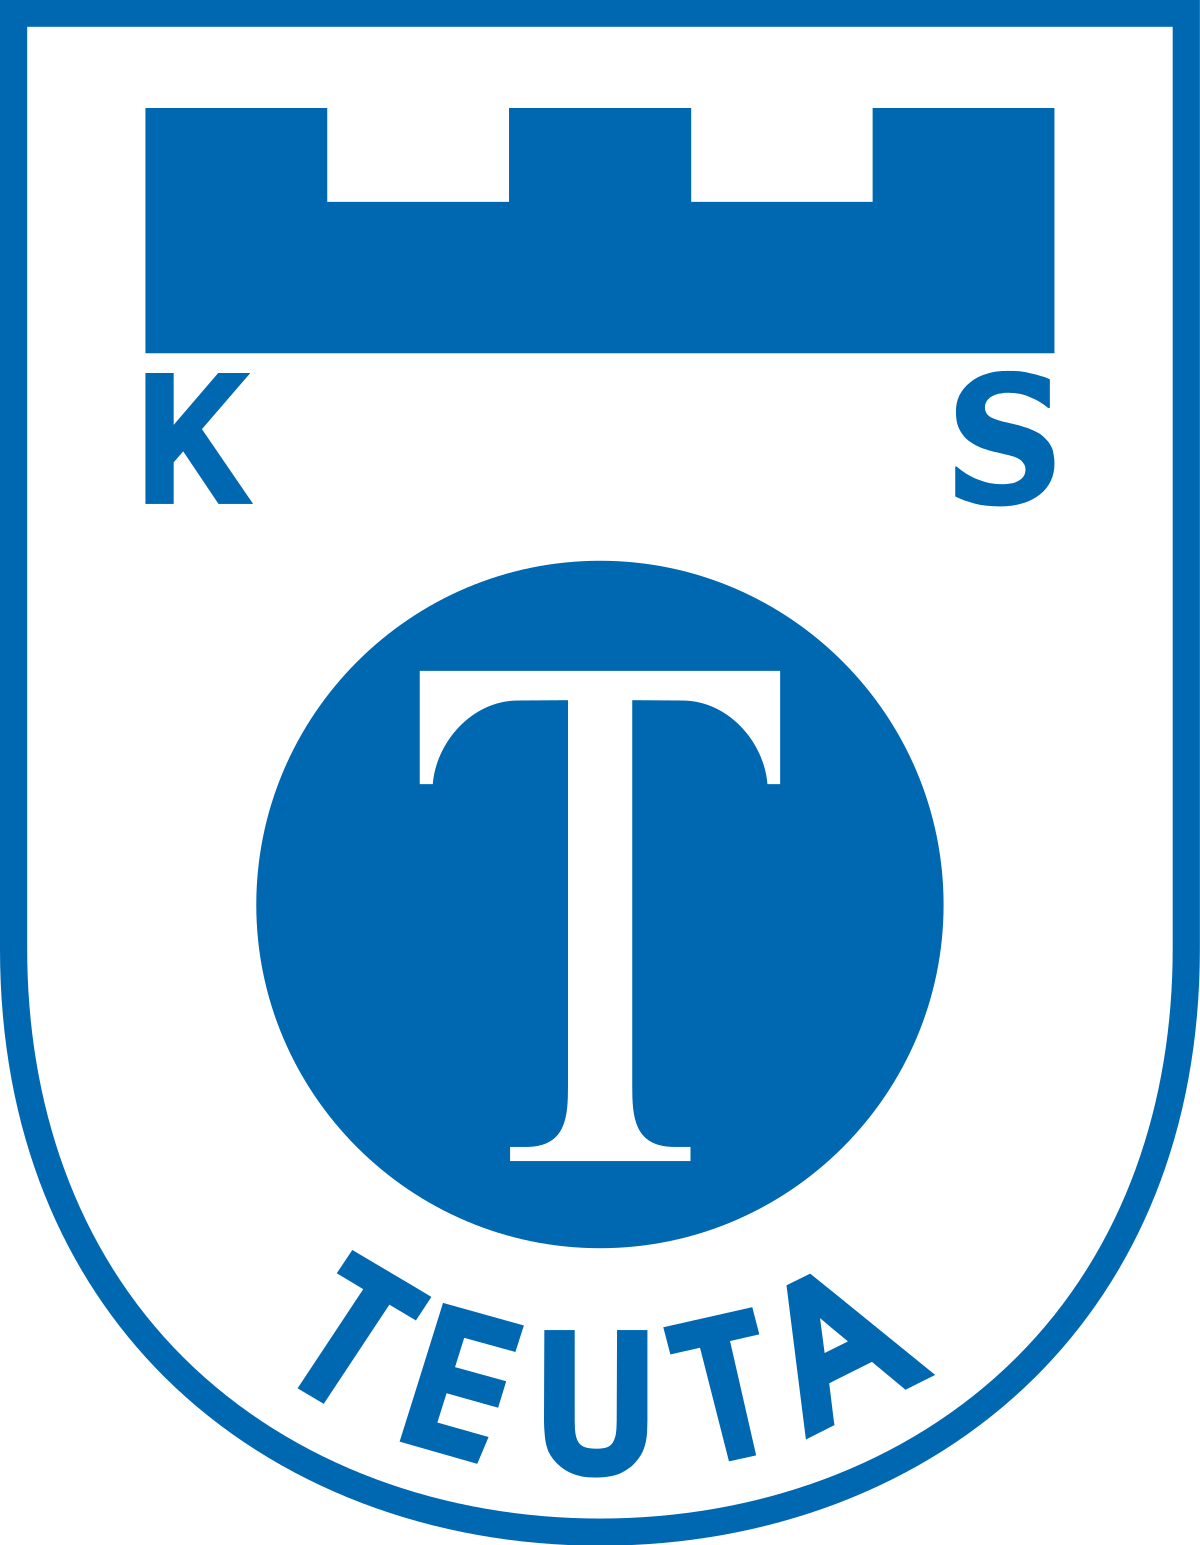 Kukesi vs Teuta Prediction: Teuta will seek to avoid relegation